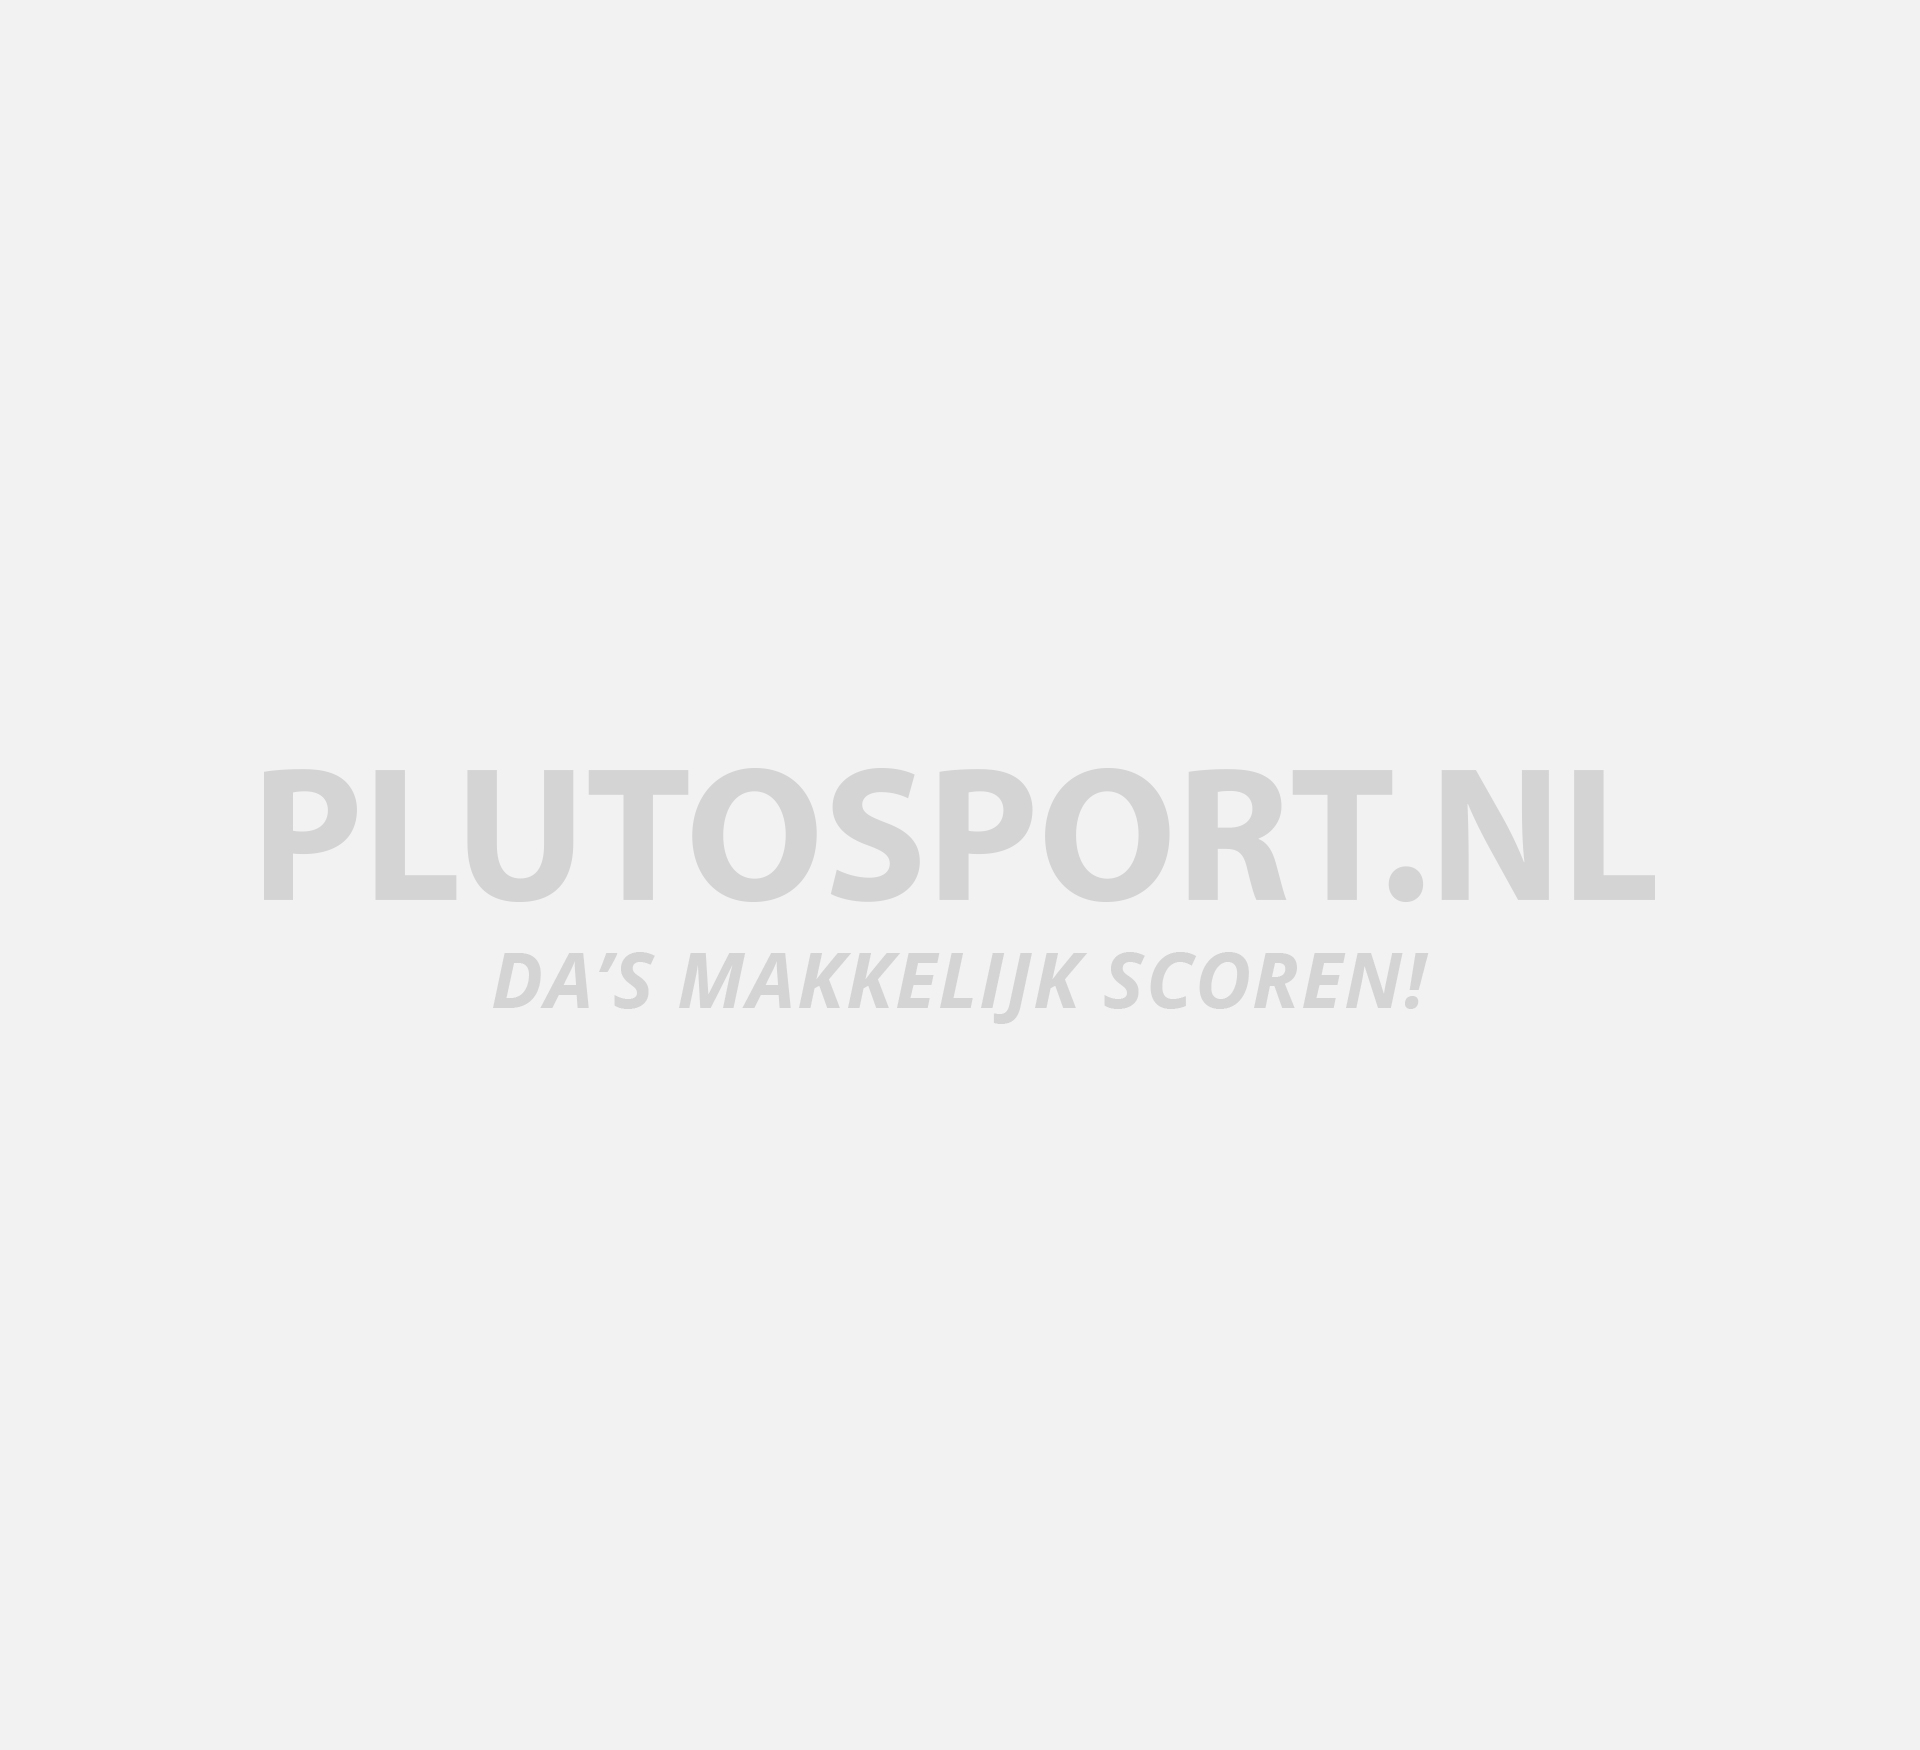 Asics Hockeyschoenen Dames | Plutosport